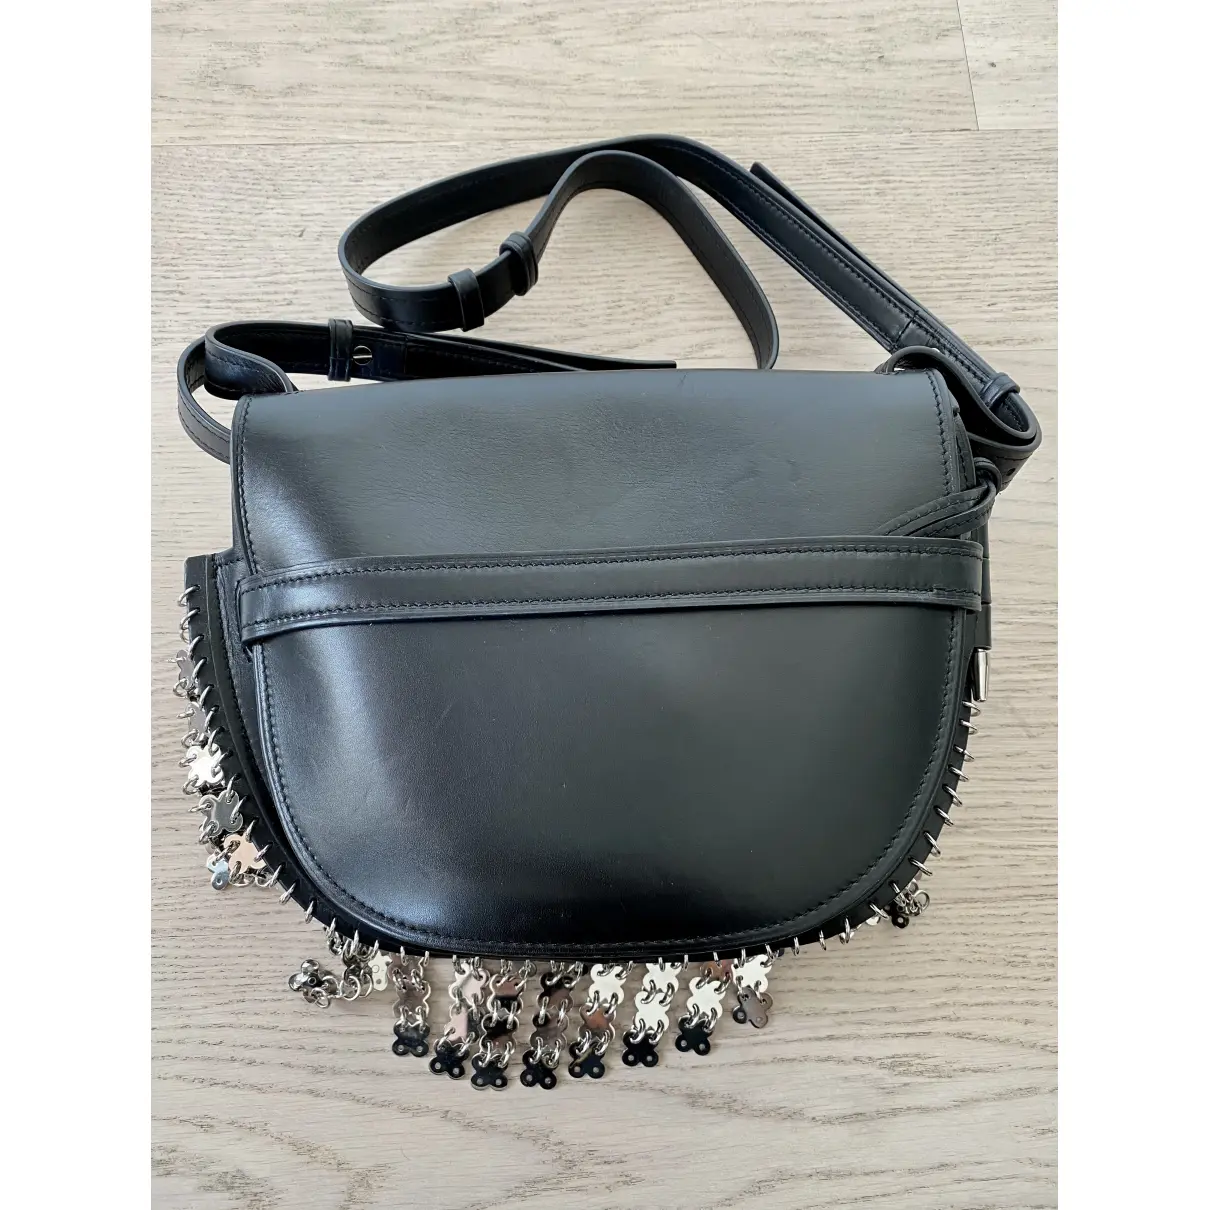 Buy Loewe Gate leather handbag online